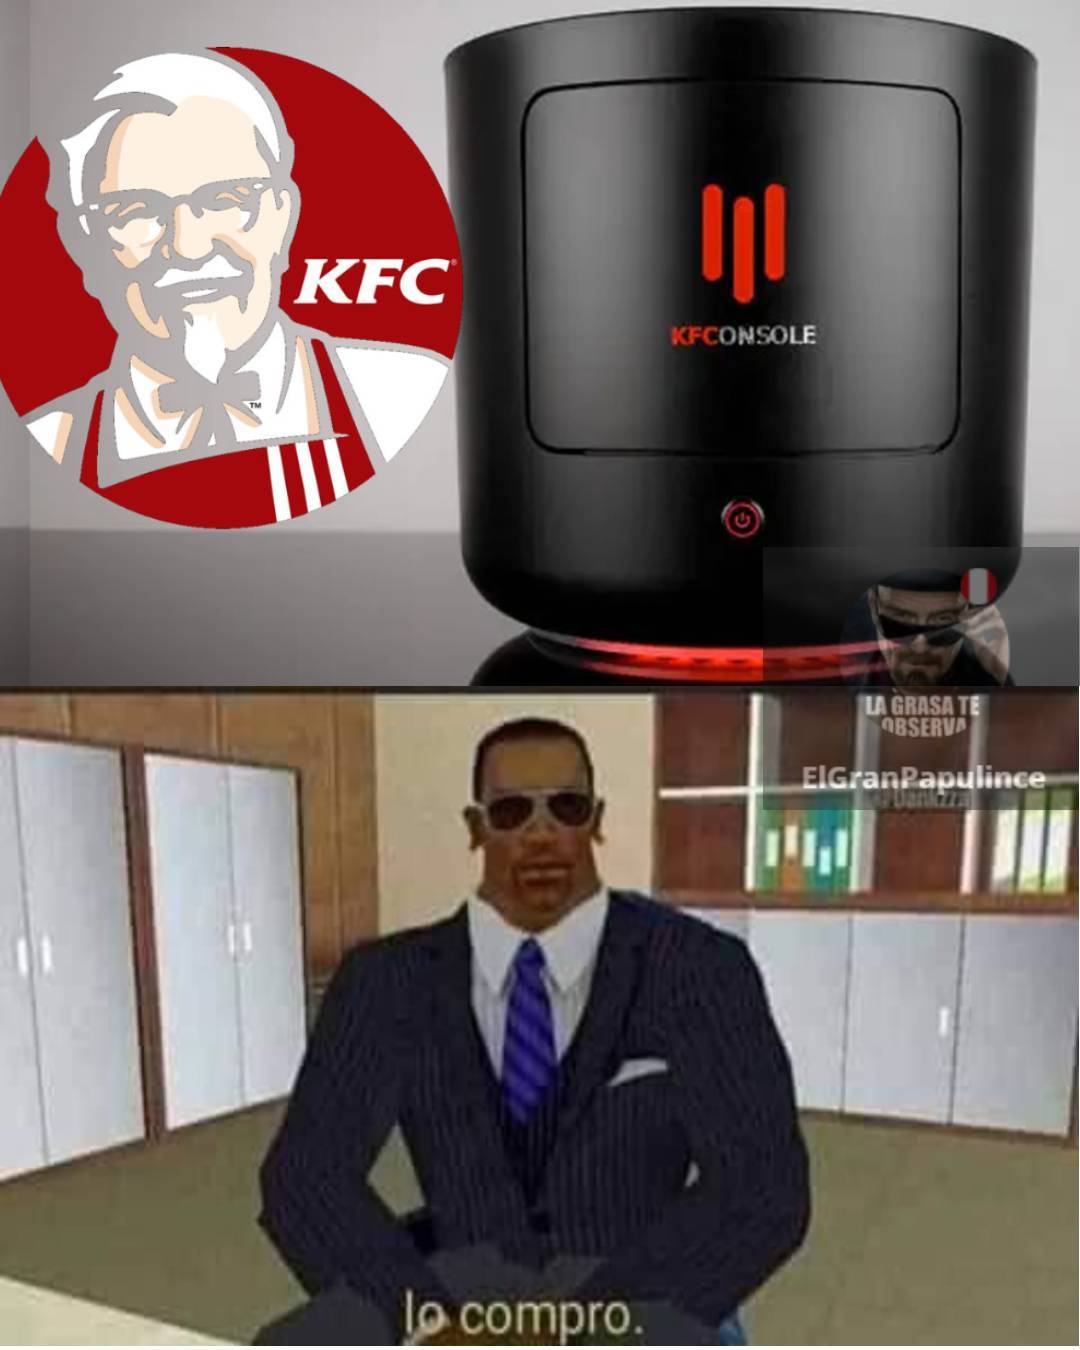 puedes hacer pollo frito de lo que se calienta xd - meme